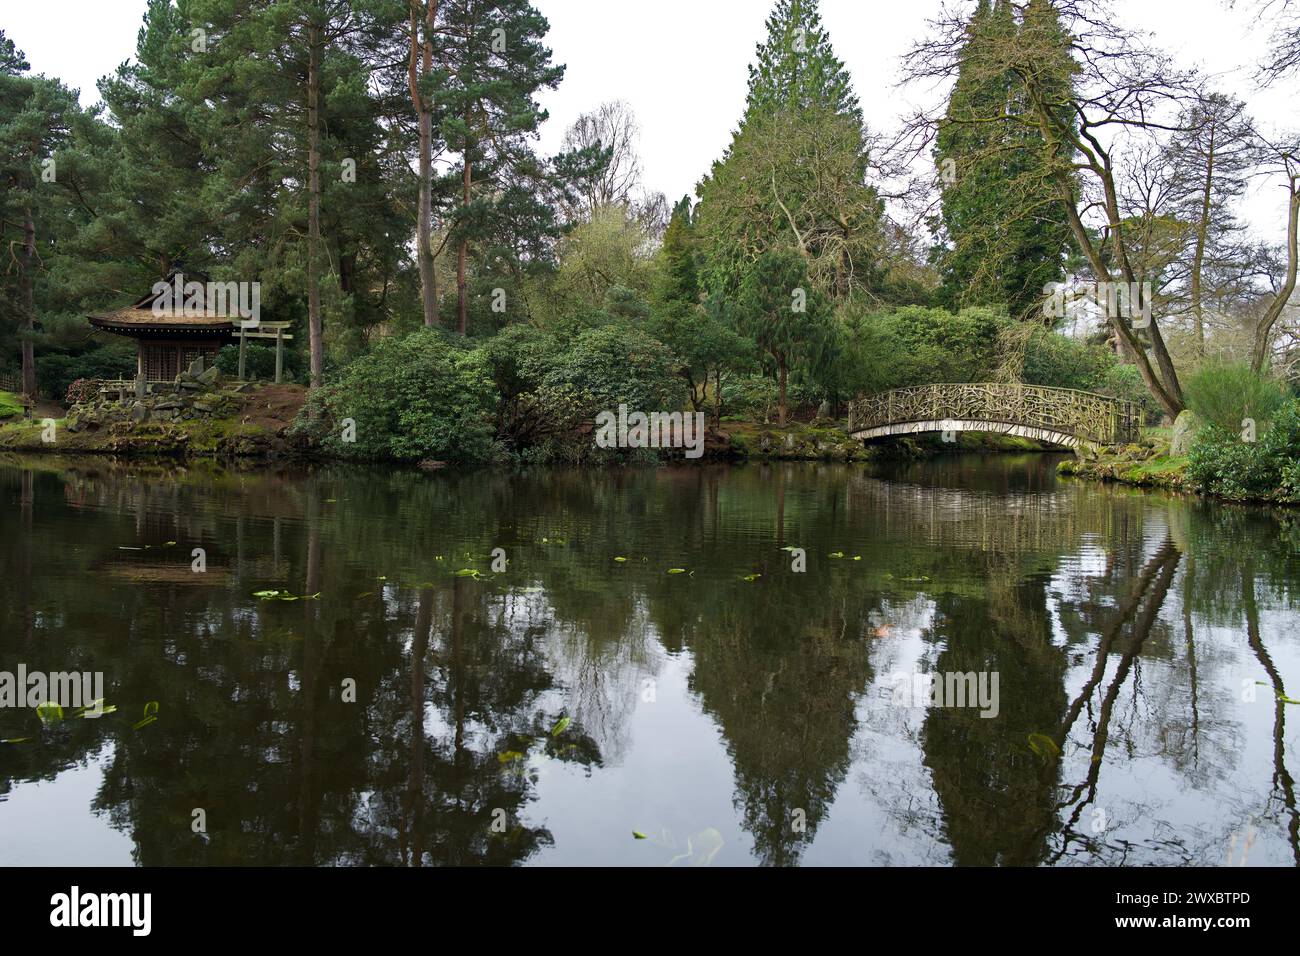 Le jardin japonais de Tatton Park, en Angleterre, est basé sur le style d'un jardin de thé japonais. Certains des objets du jardin ont été apportés du Japon. Banque D'Images